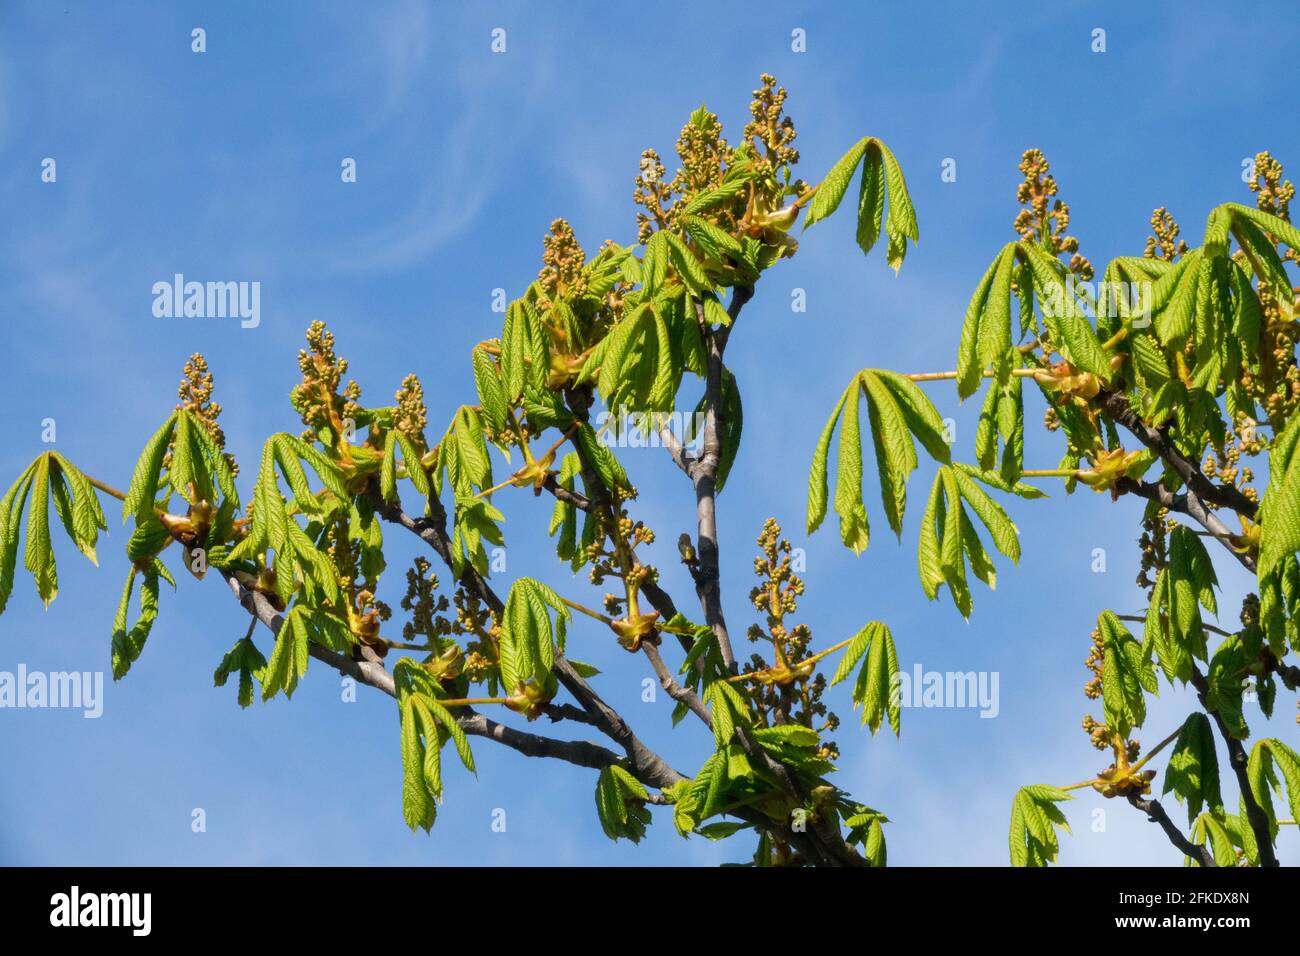 Conker arbre bourgeonnant Aesculus hippocastanum branches de châtaignes de cheval Banque D'Images